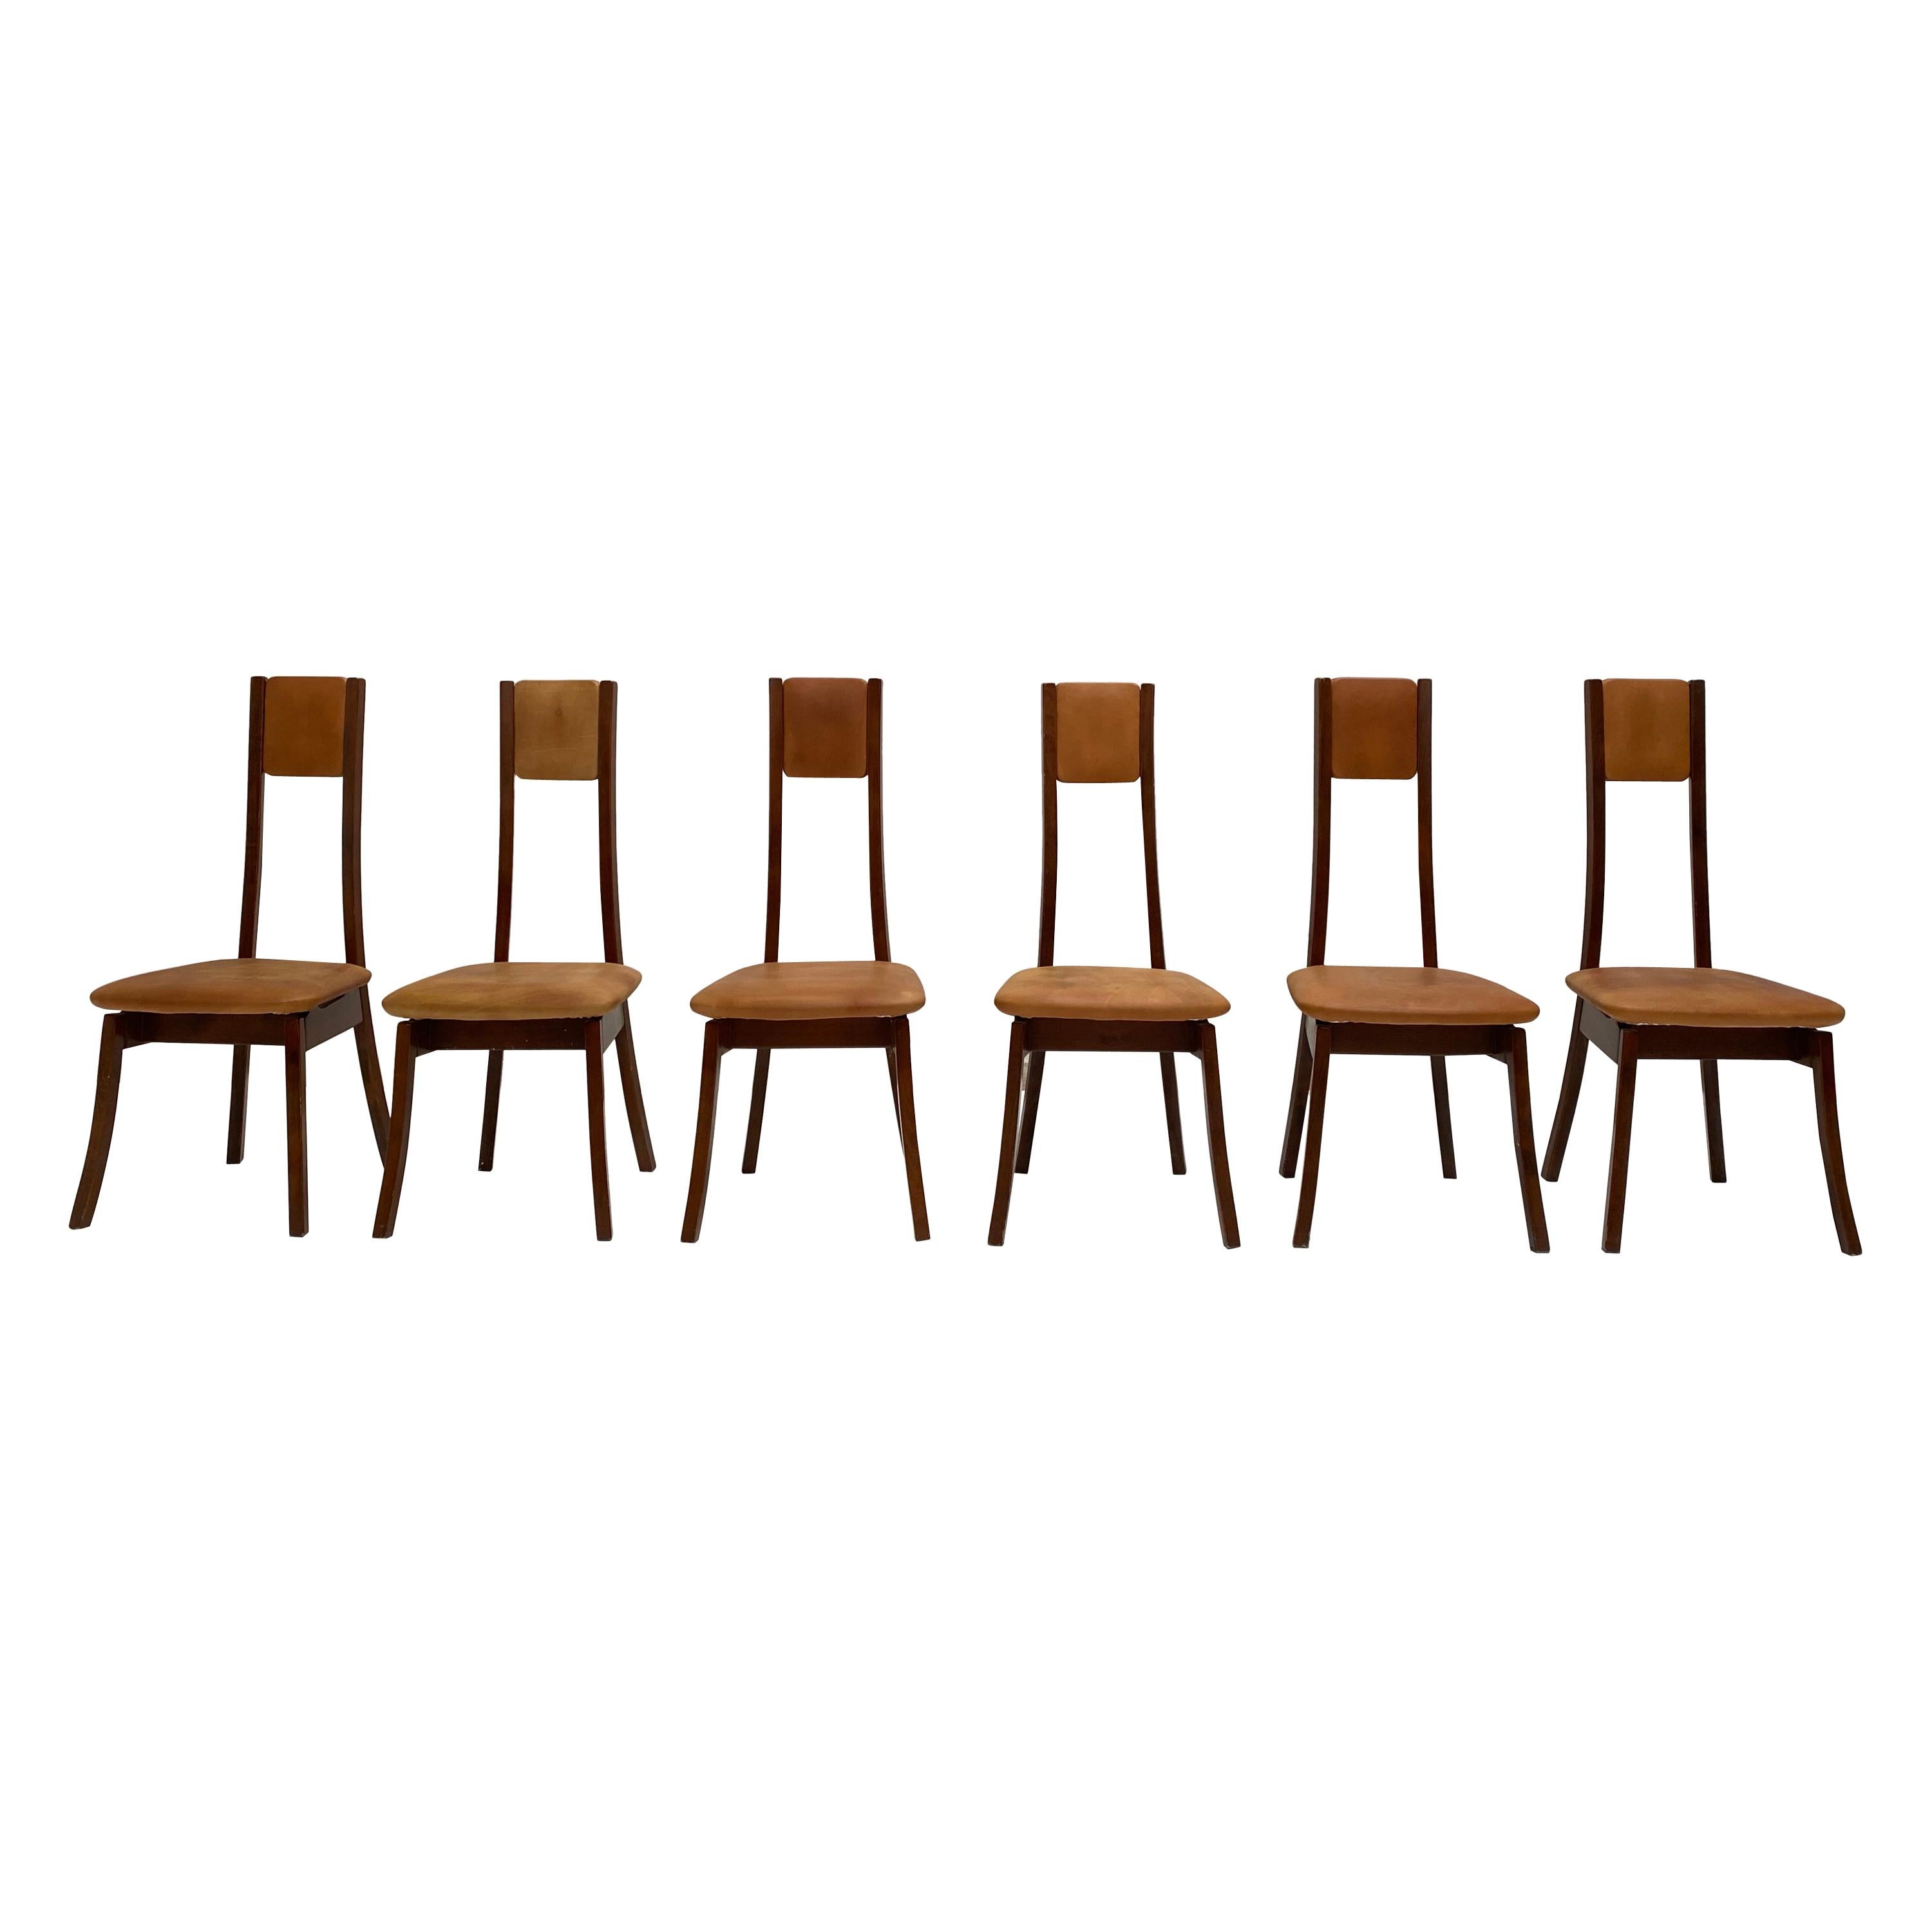 Six chaises à manger Mangiarotti 'S11' en noyer & en cuir:: Sorgente Dei Mobili 1972